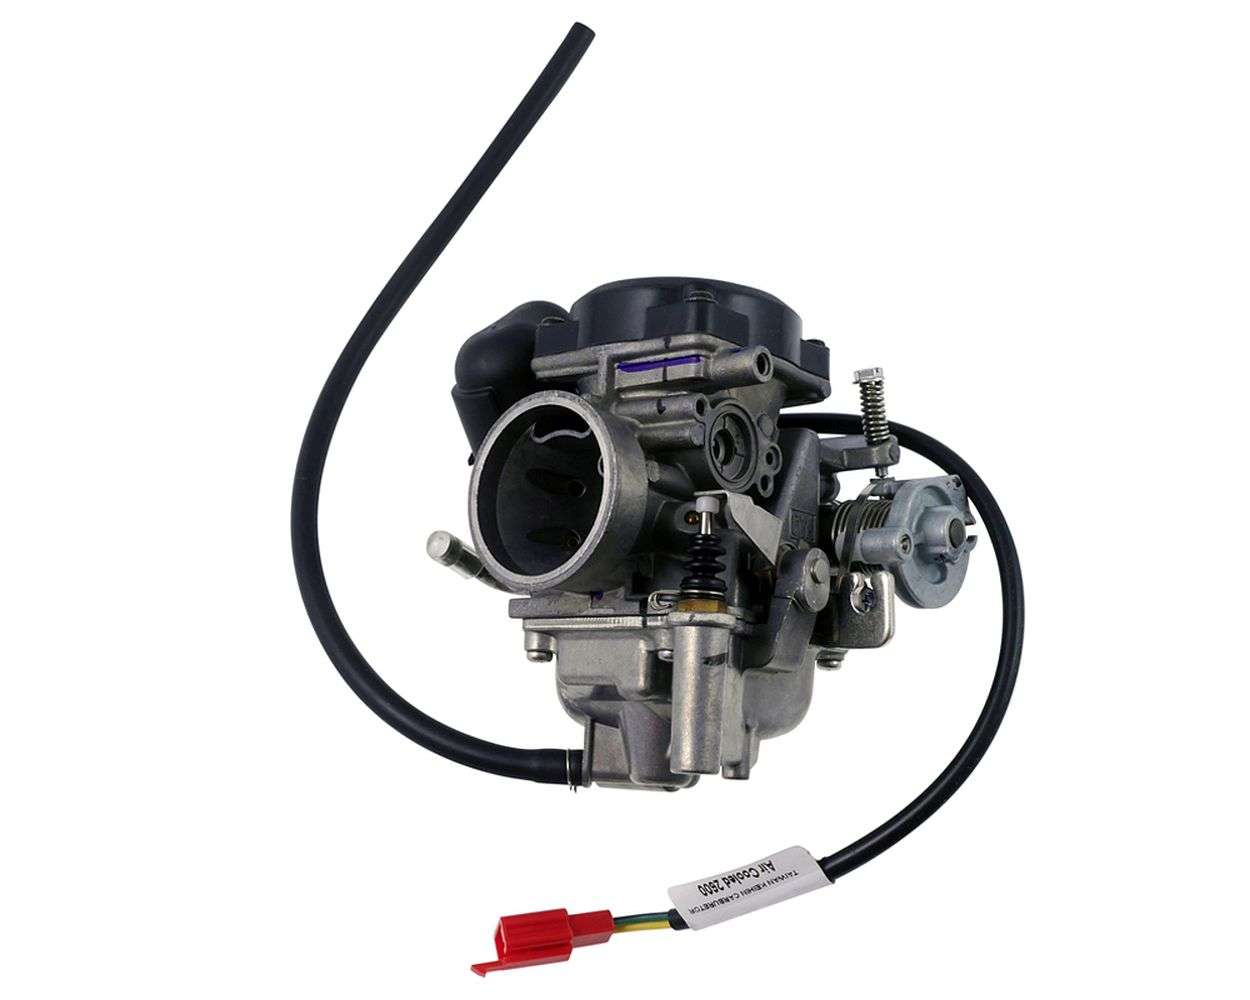 Vergaser CVK HL IC (PD24J) 24mm E-Choke 125ccm 4Takt 706014 125ccm-180ccm  Schwimmer-Vergaser Carburetor Carburateur Benzin-Vergaser Rex